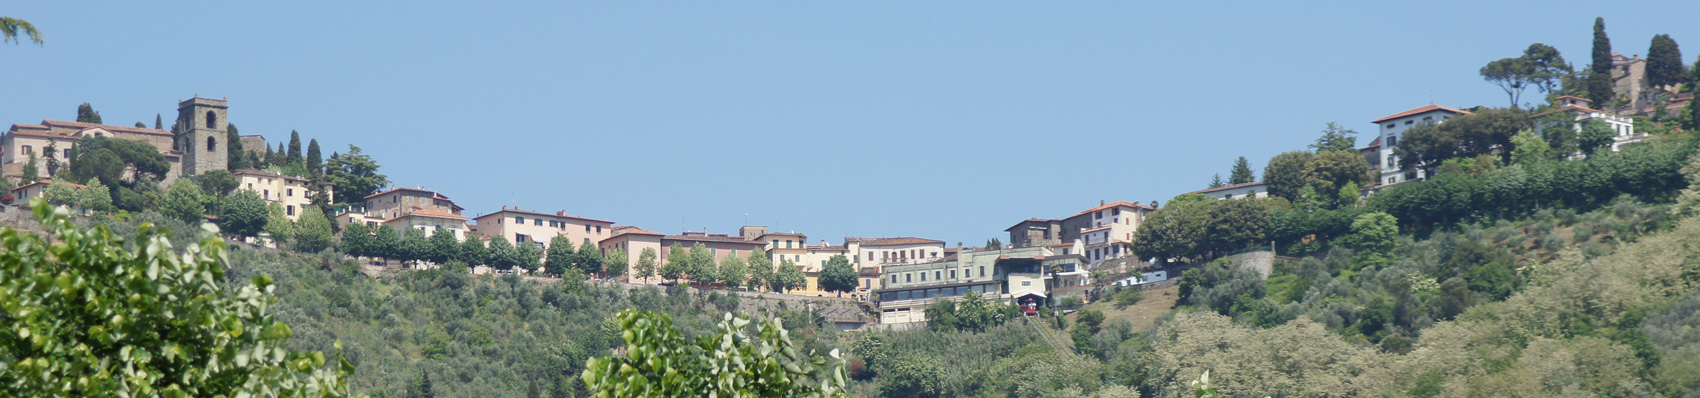 Hotel Torretta Montecatini